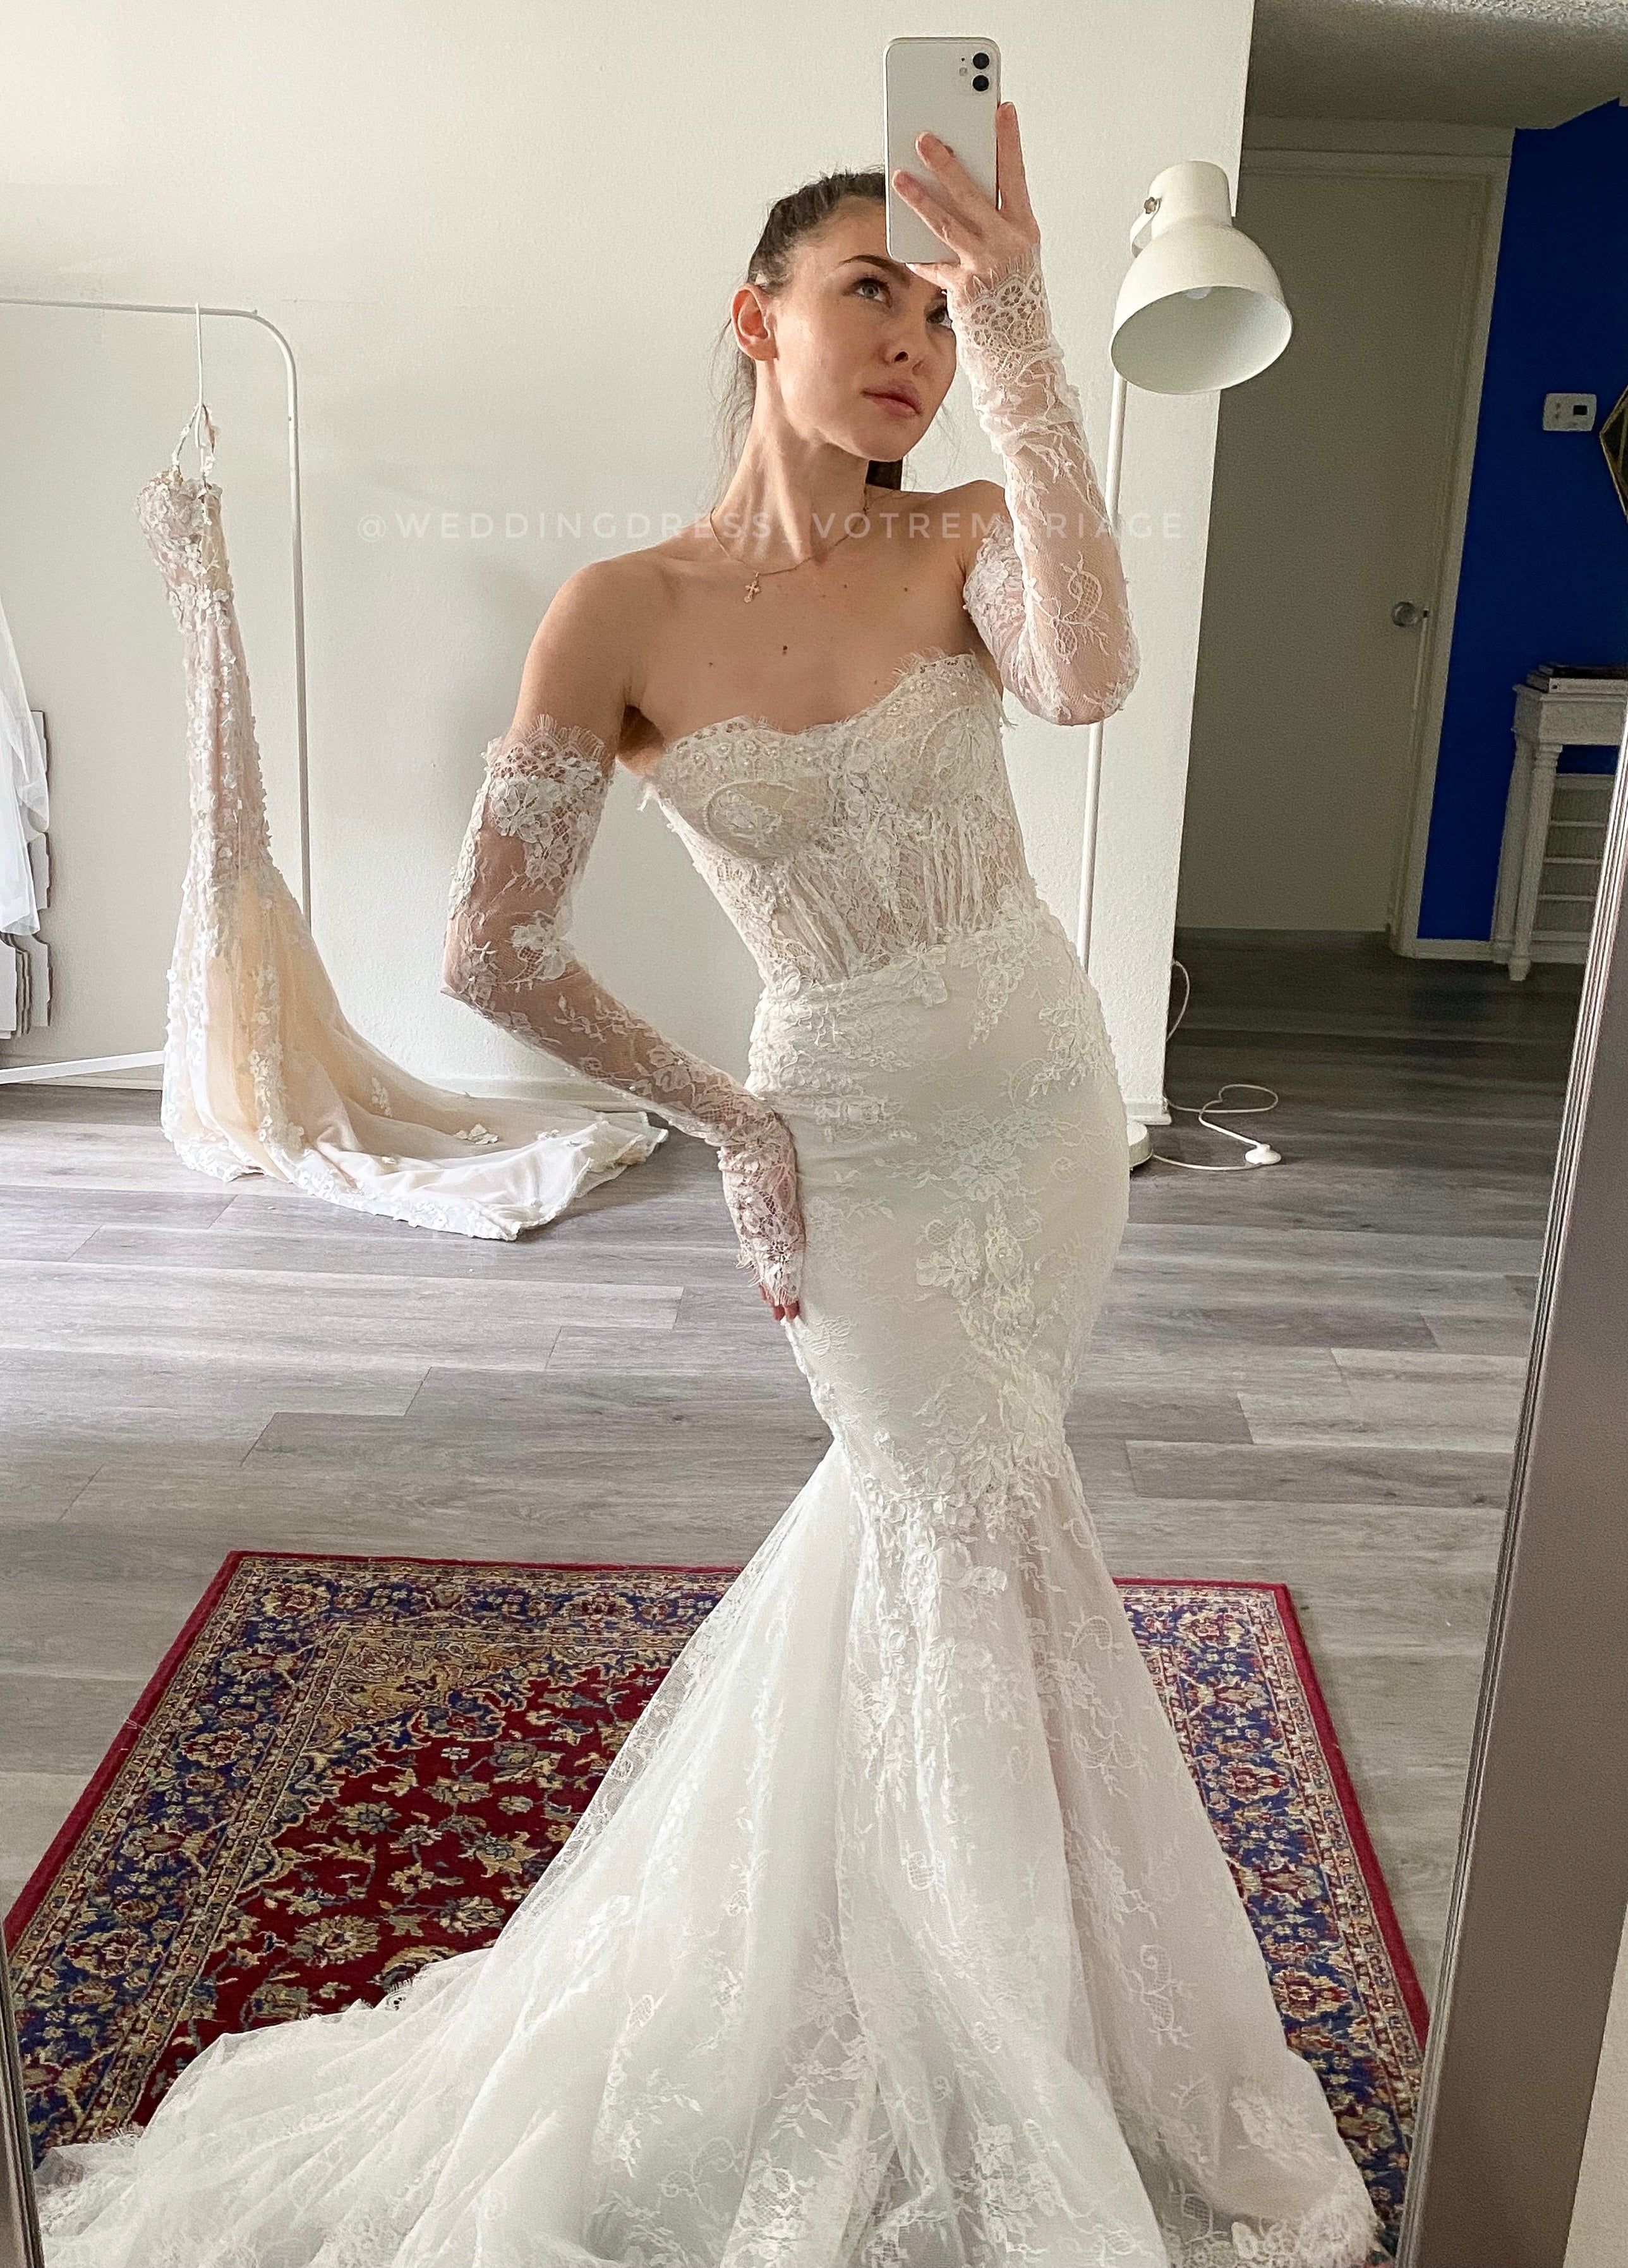 OSTTY - O Neck Full Sleeves Detachable Skirt Mermaid Wedding Dresses $209.90